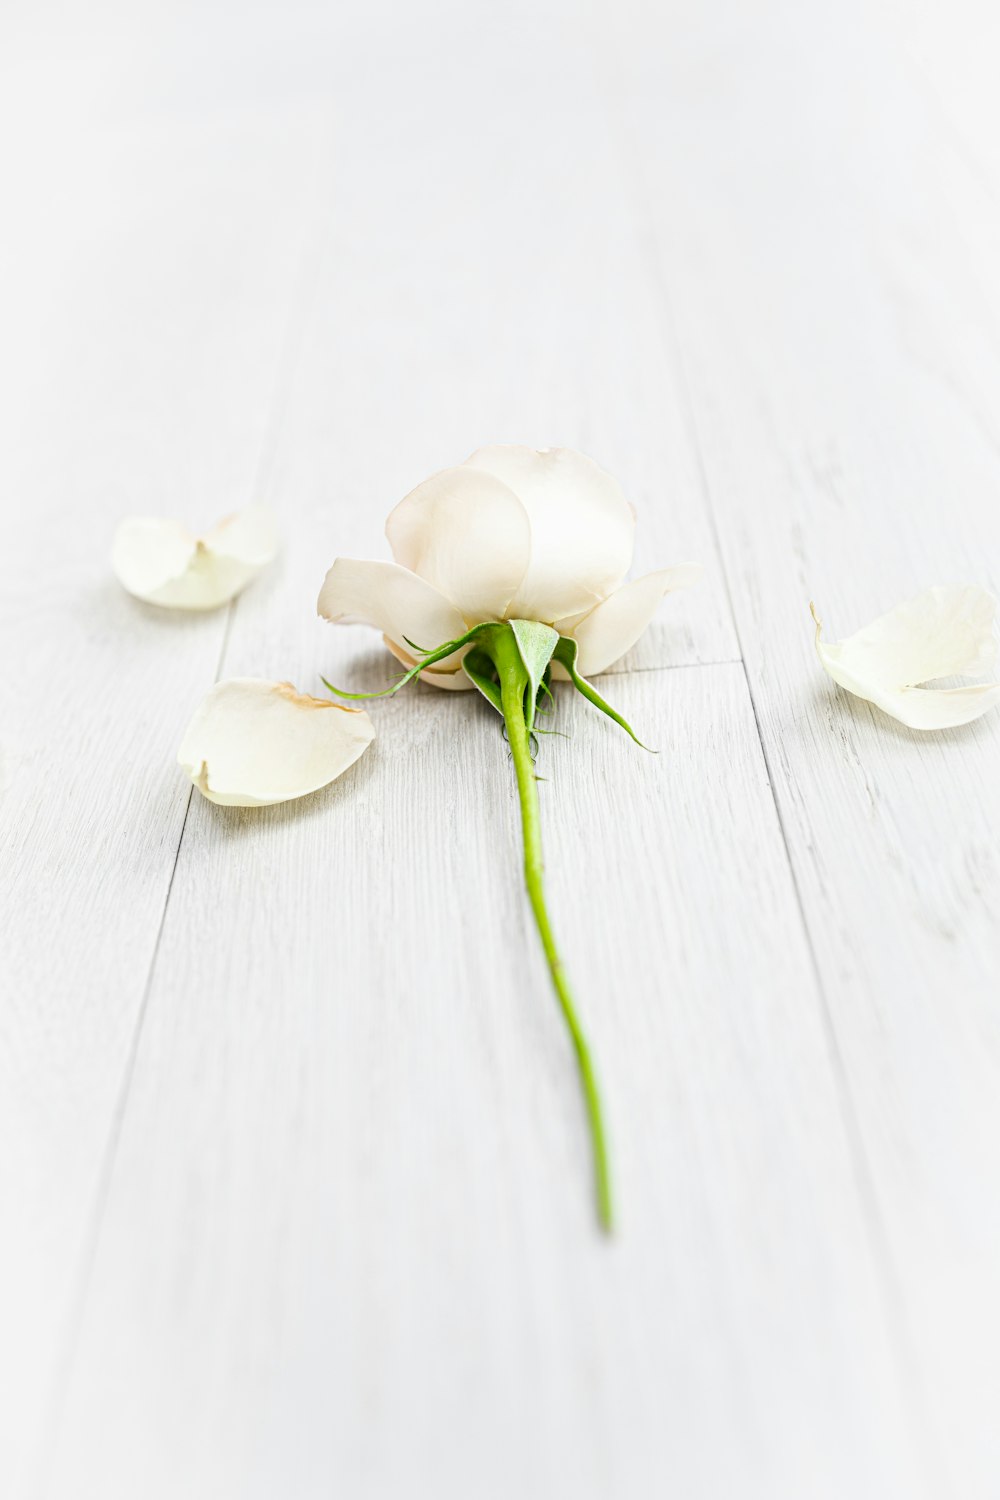 白い木製のテーブルに白い花